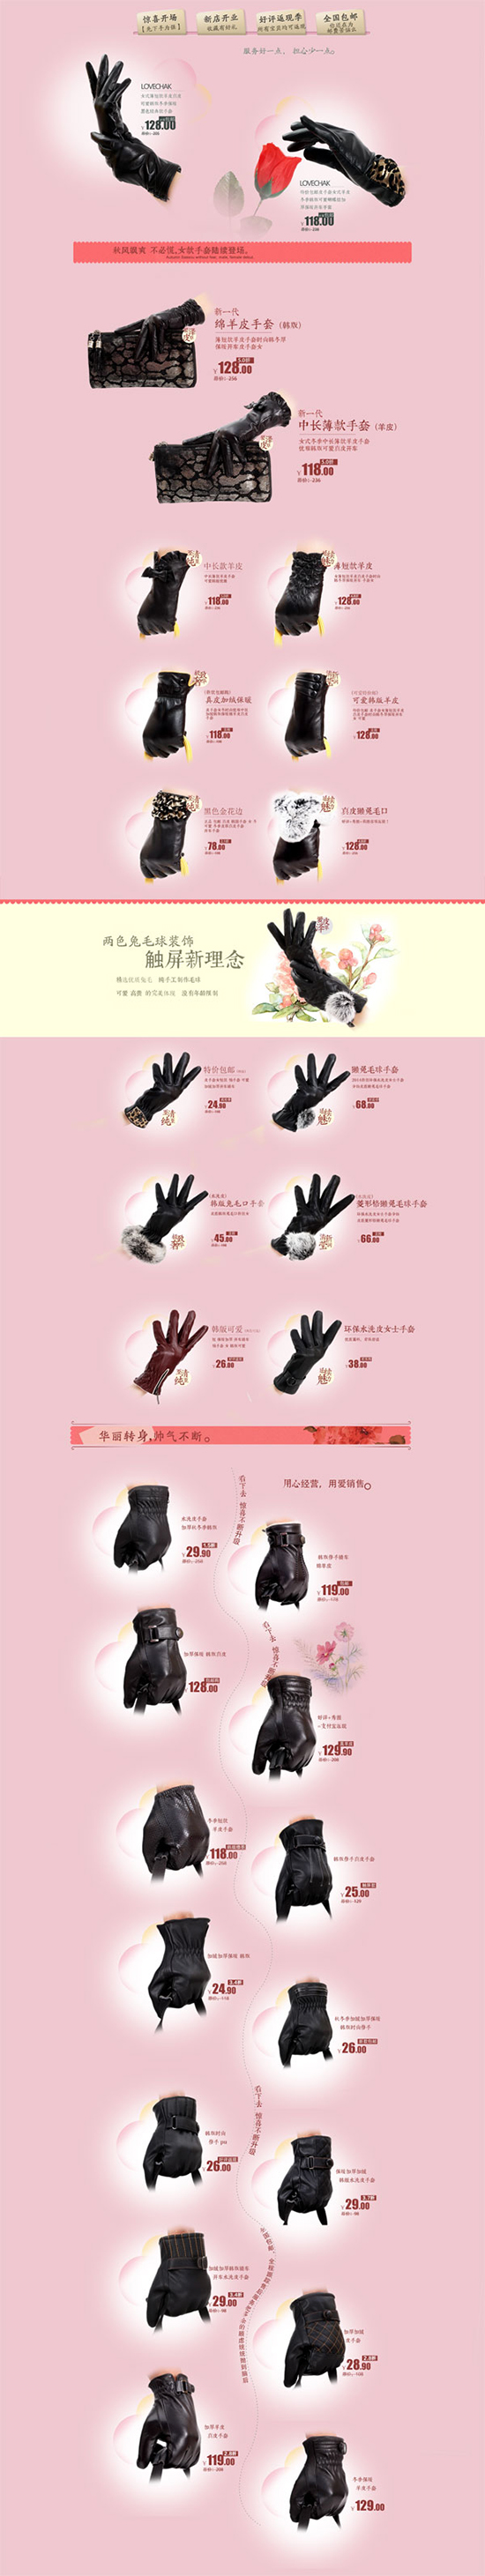 gants shop taobao psd modèle